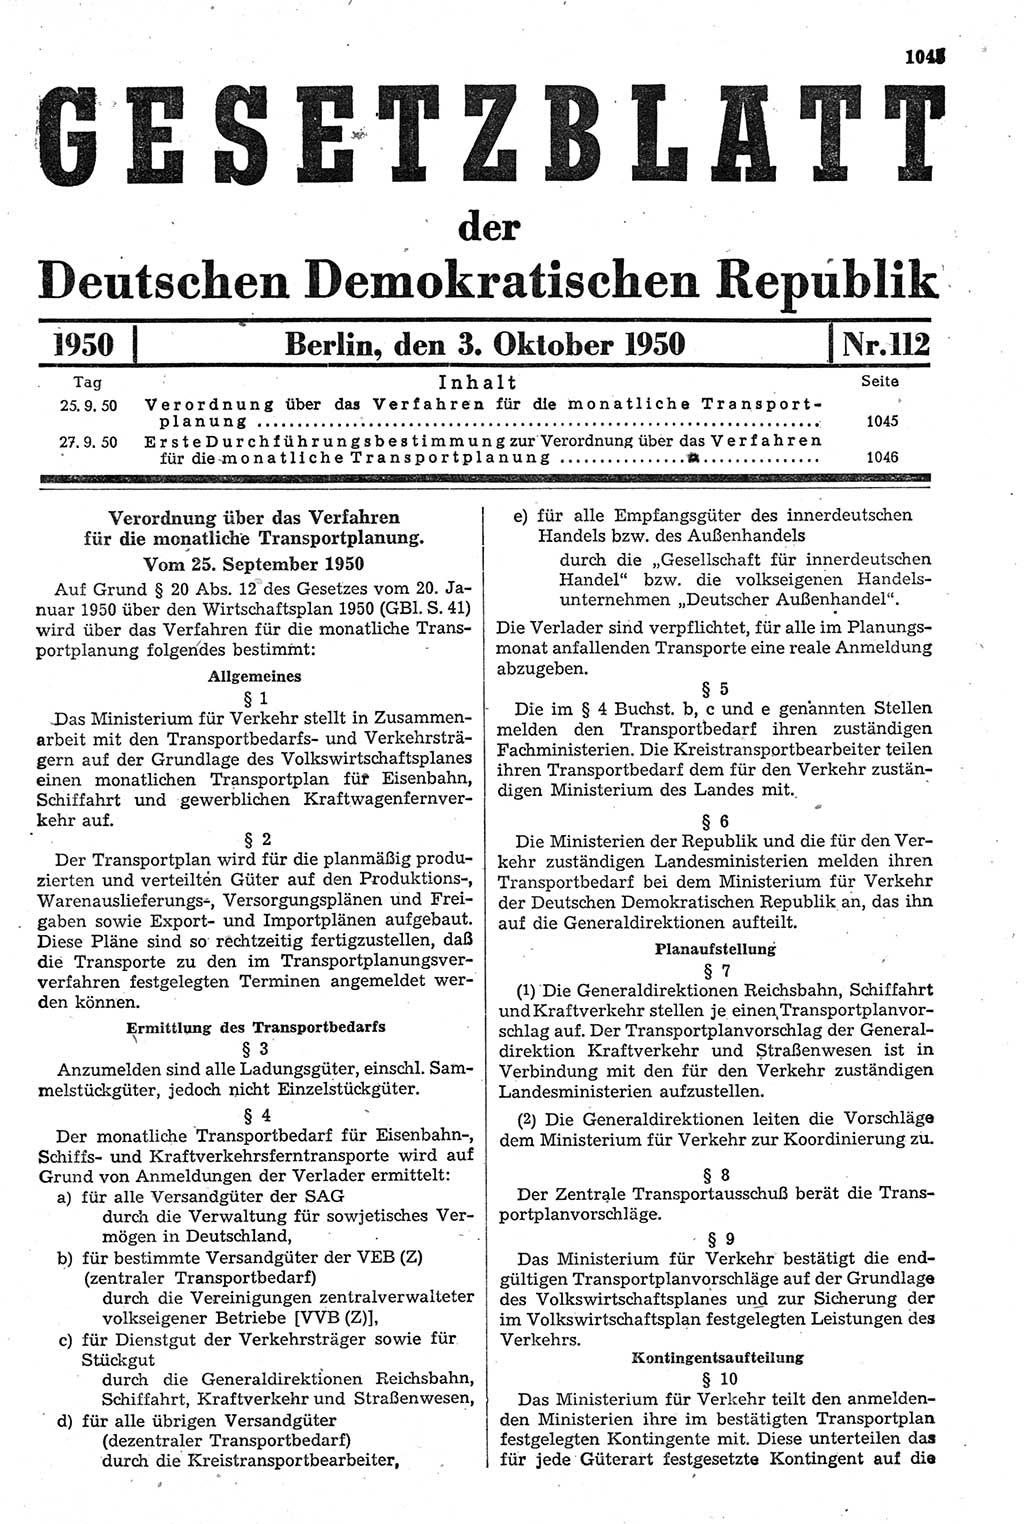 Gesetzblatt (GBl.) der Deutschen Demokratischen Republik (DDR) 1950, Seite 1045 (GBl. DDR 1950, S. 1045)